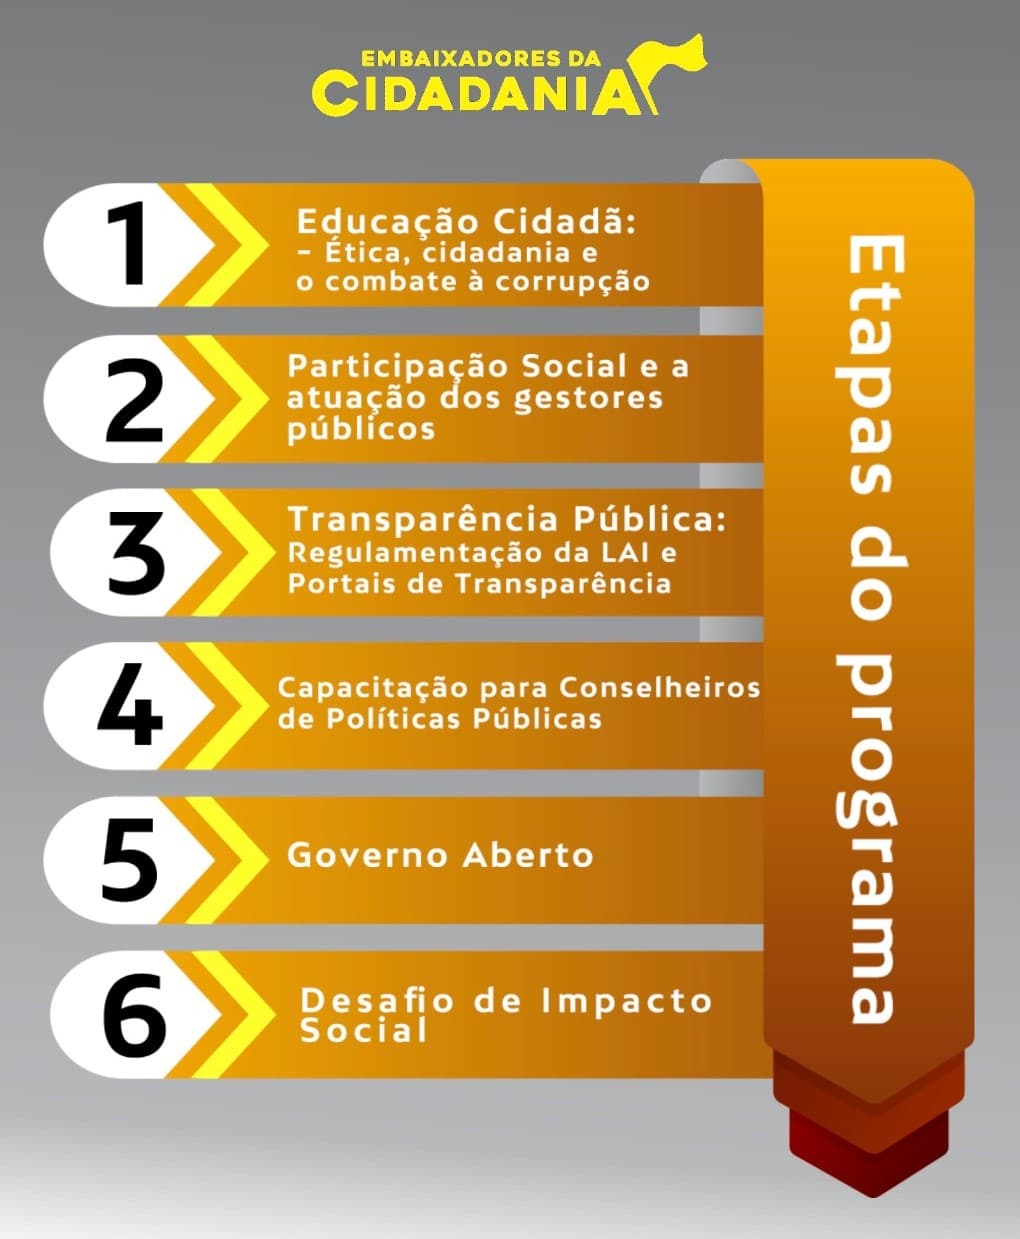 Programa Embaixadores da Cidadania - Goiás (CGE-GO)